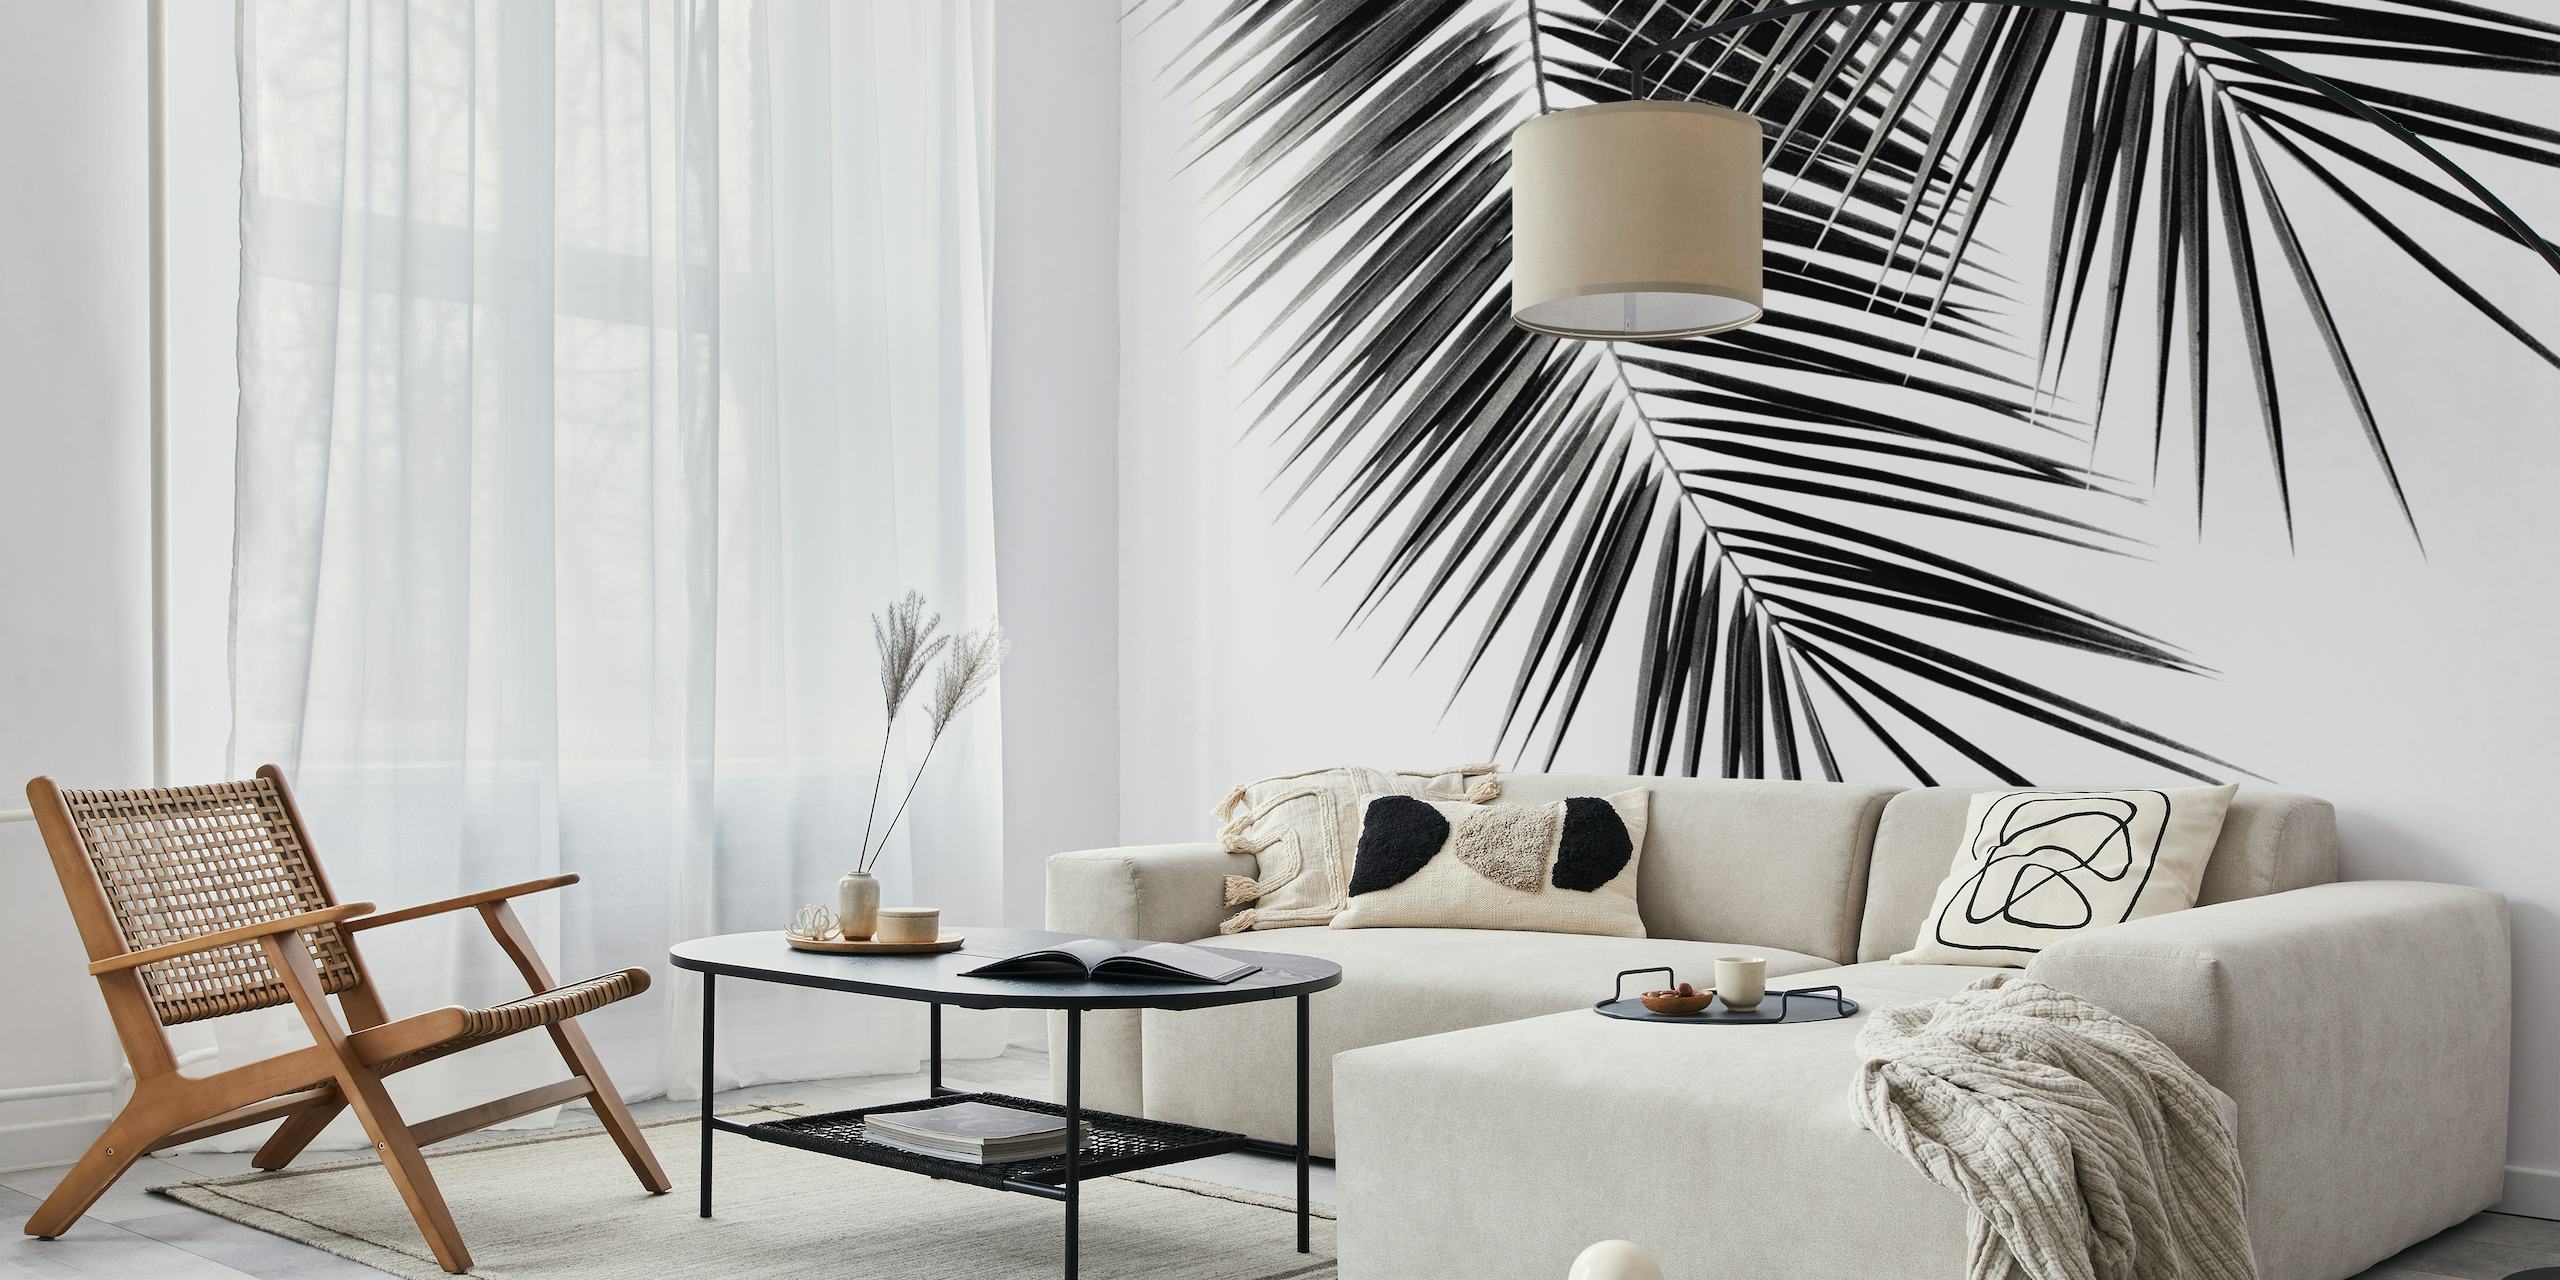 Fotomural vinílico monocromático de folhas de palmeira preta para design de interiores contemporâneo